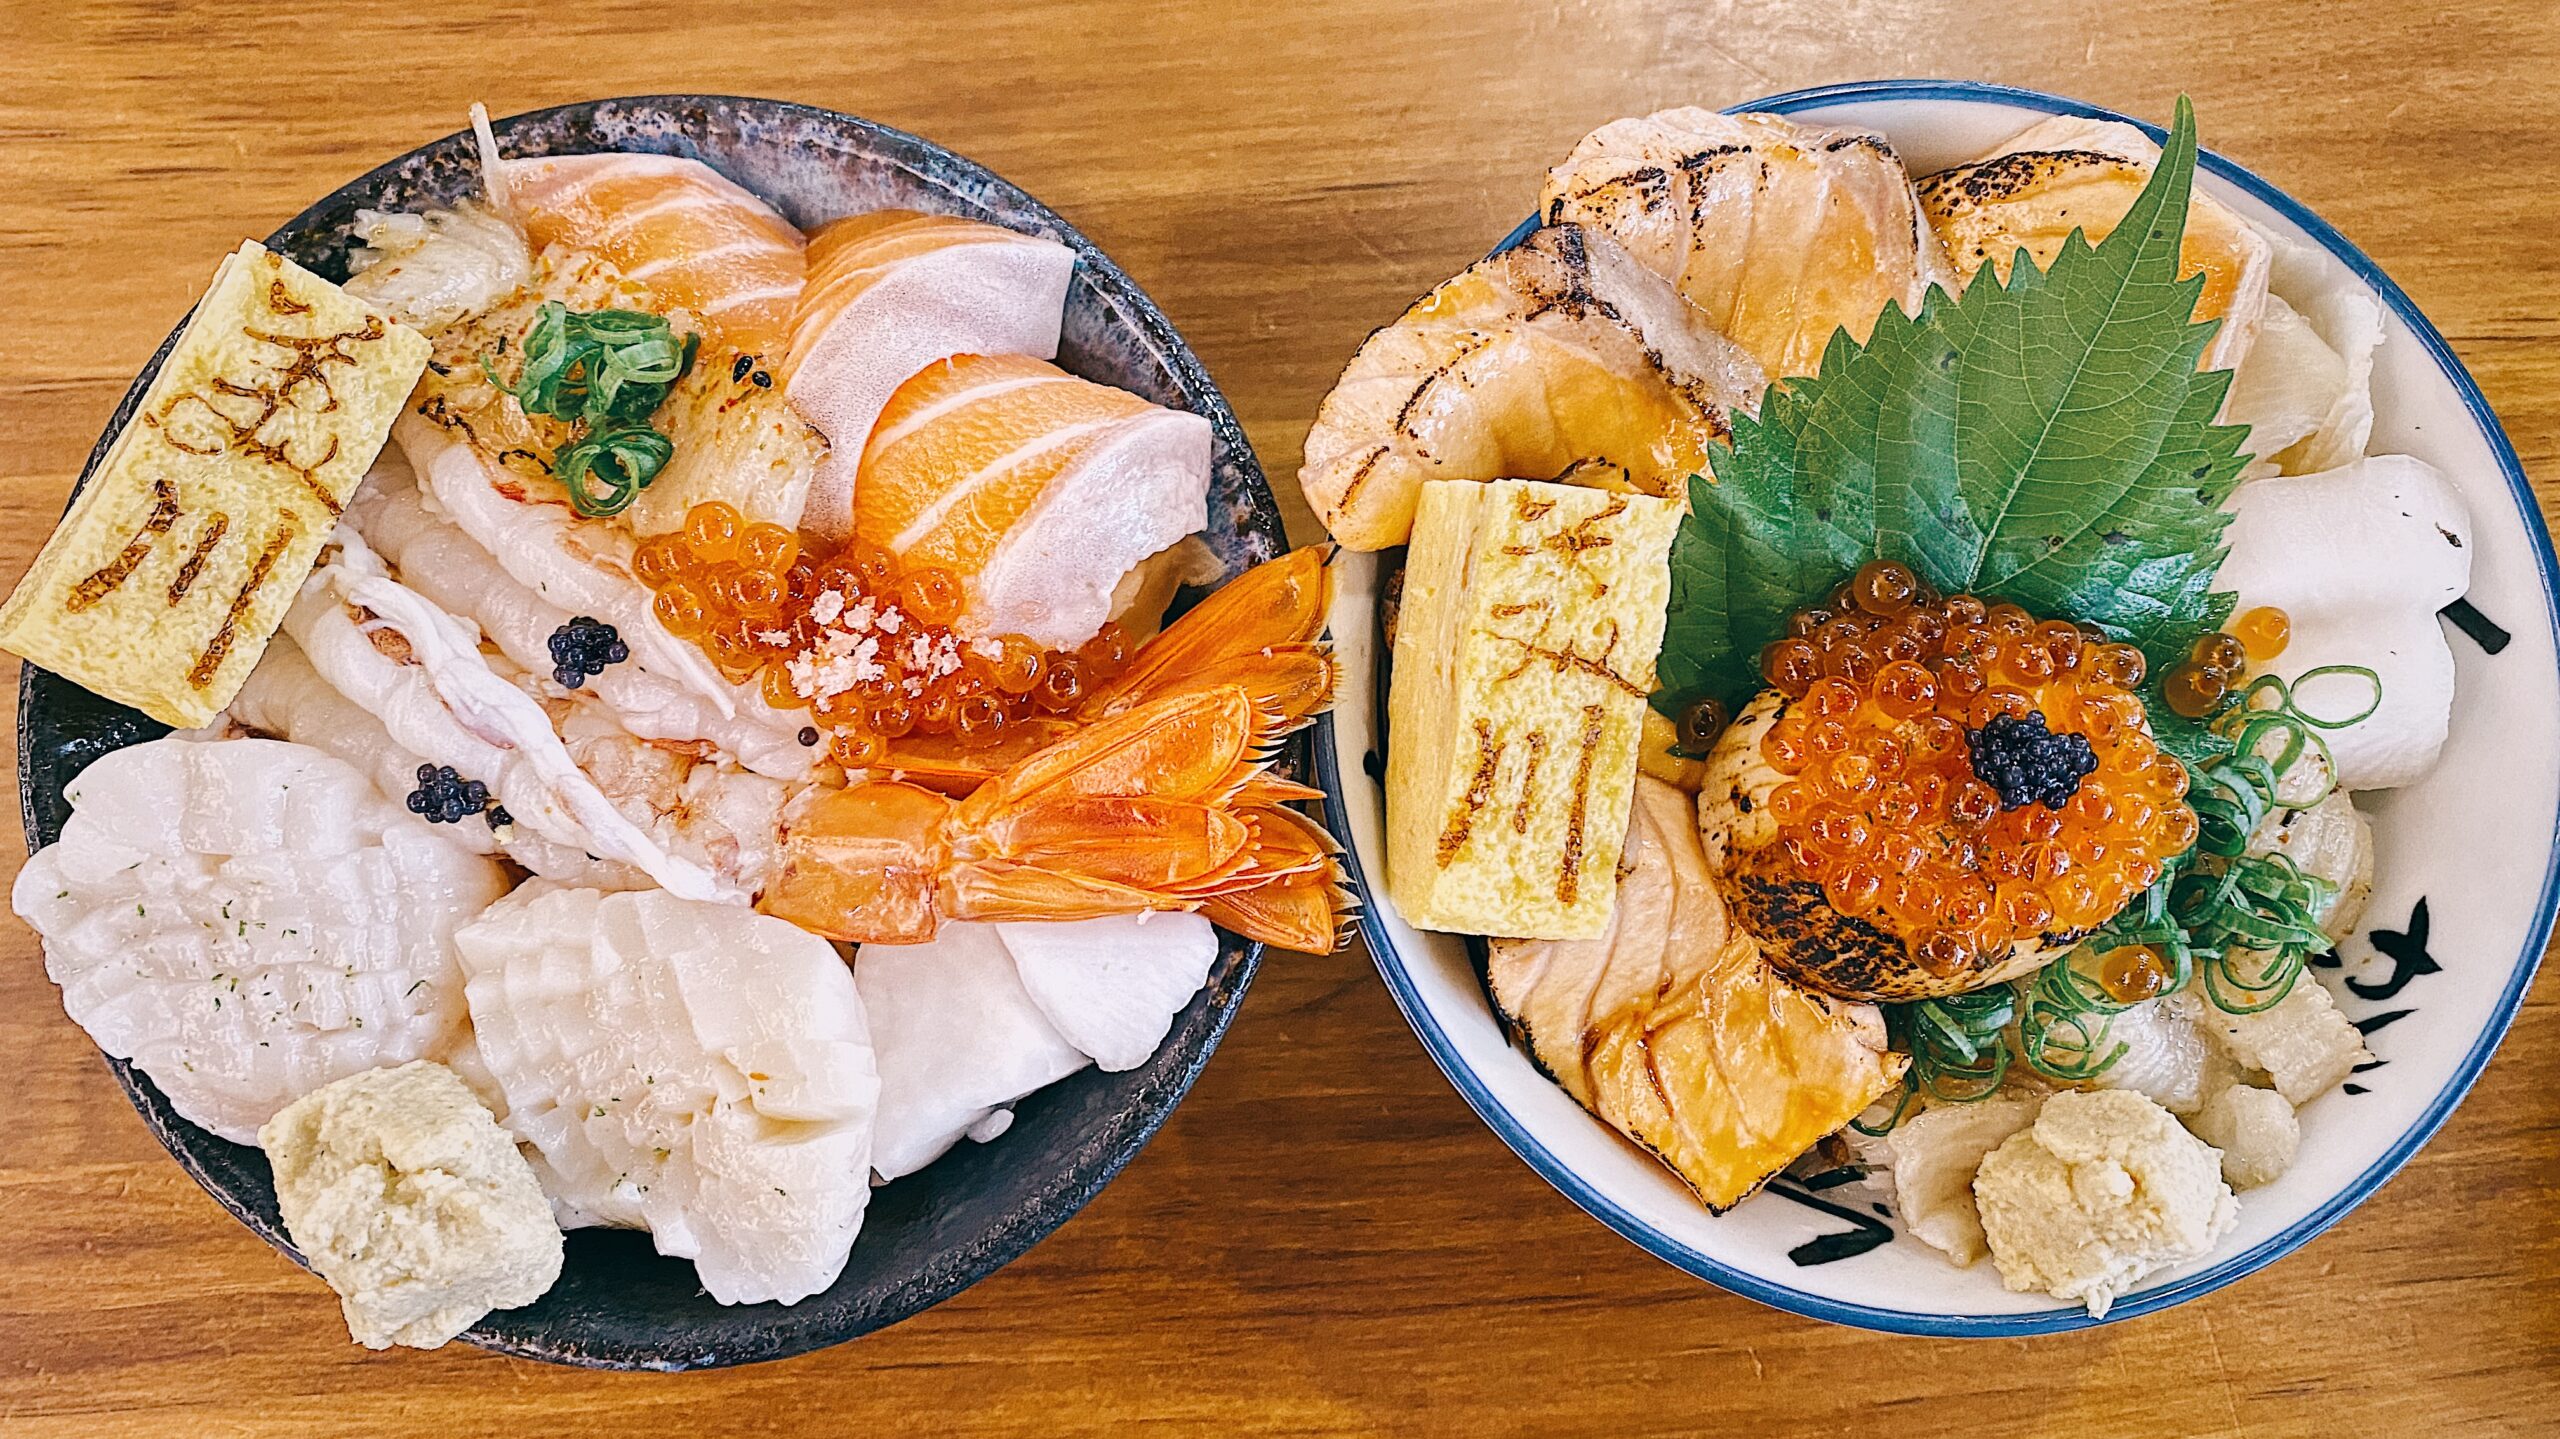 今日熱門文章：【內湖美食】美川壽司mikawa 新鮮食材 一次上癮令人驚豔的海鮮丼飯 (菜單)